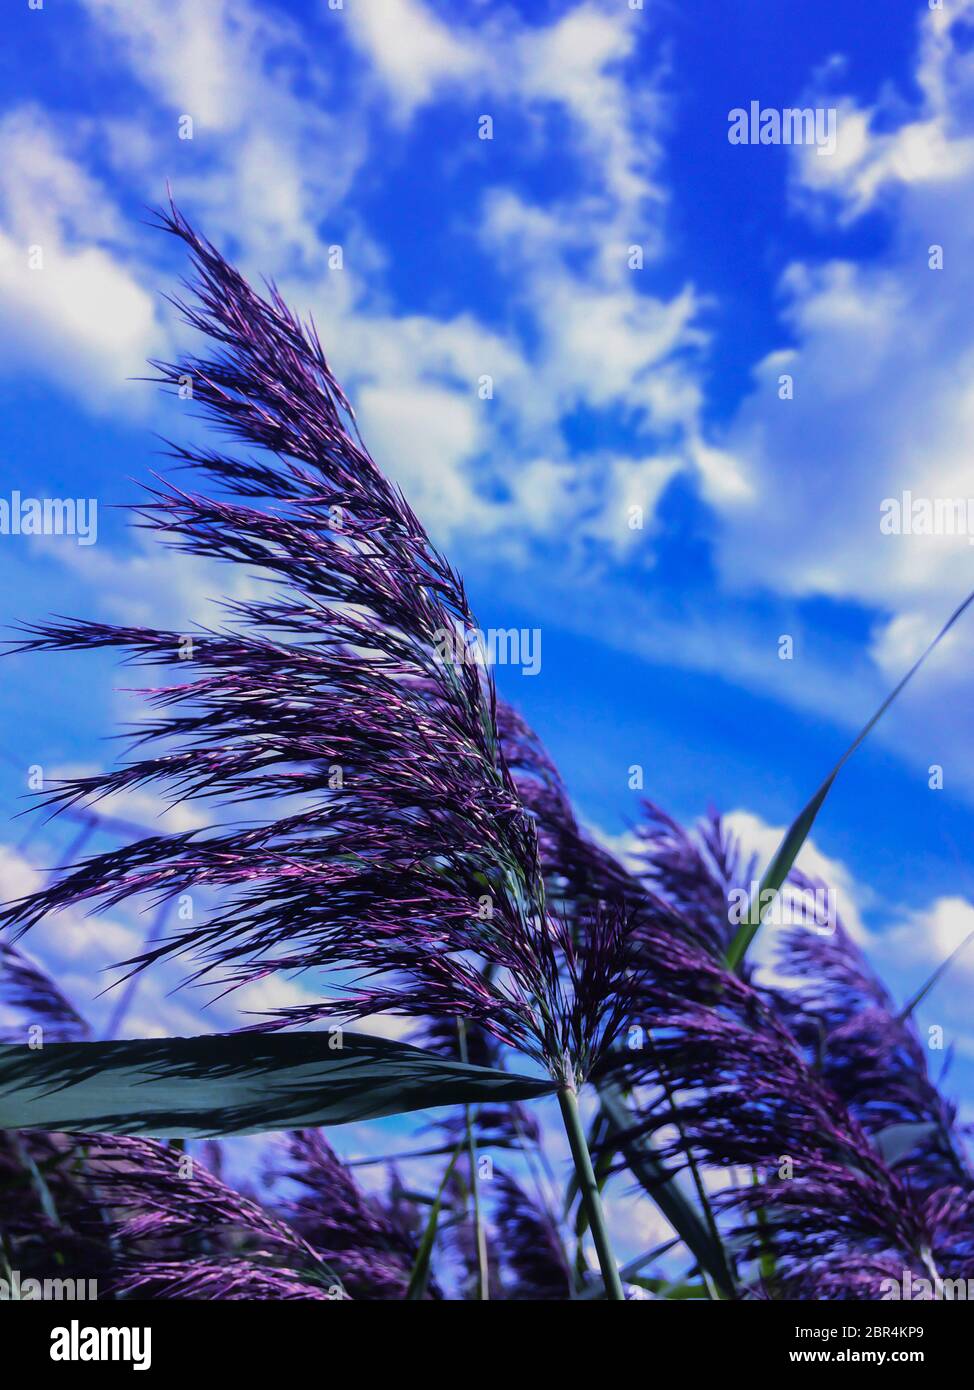 l'erba paludosa in fiore o piante selvatiche con lunghi stocchi su uno sfondo indistinto di cielo blu e tempo ventoso Foto Stock